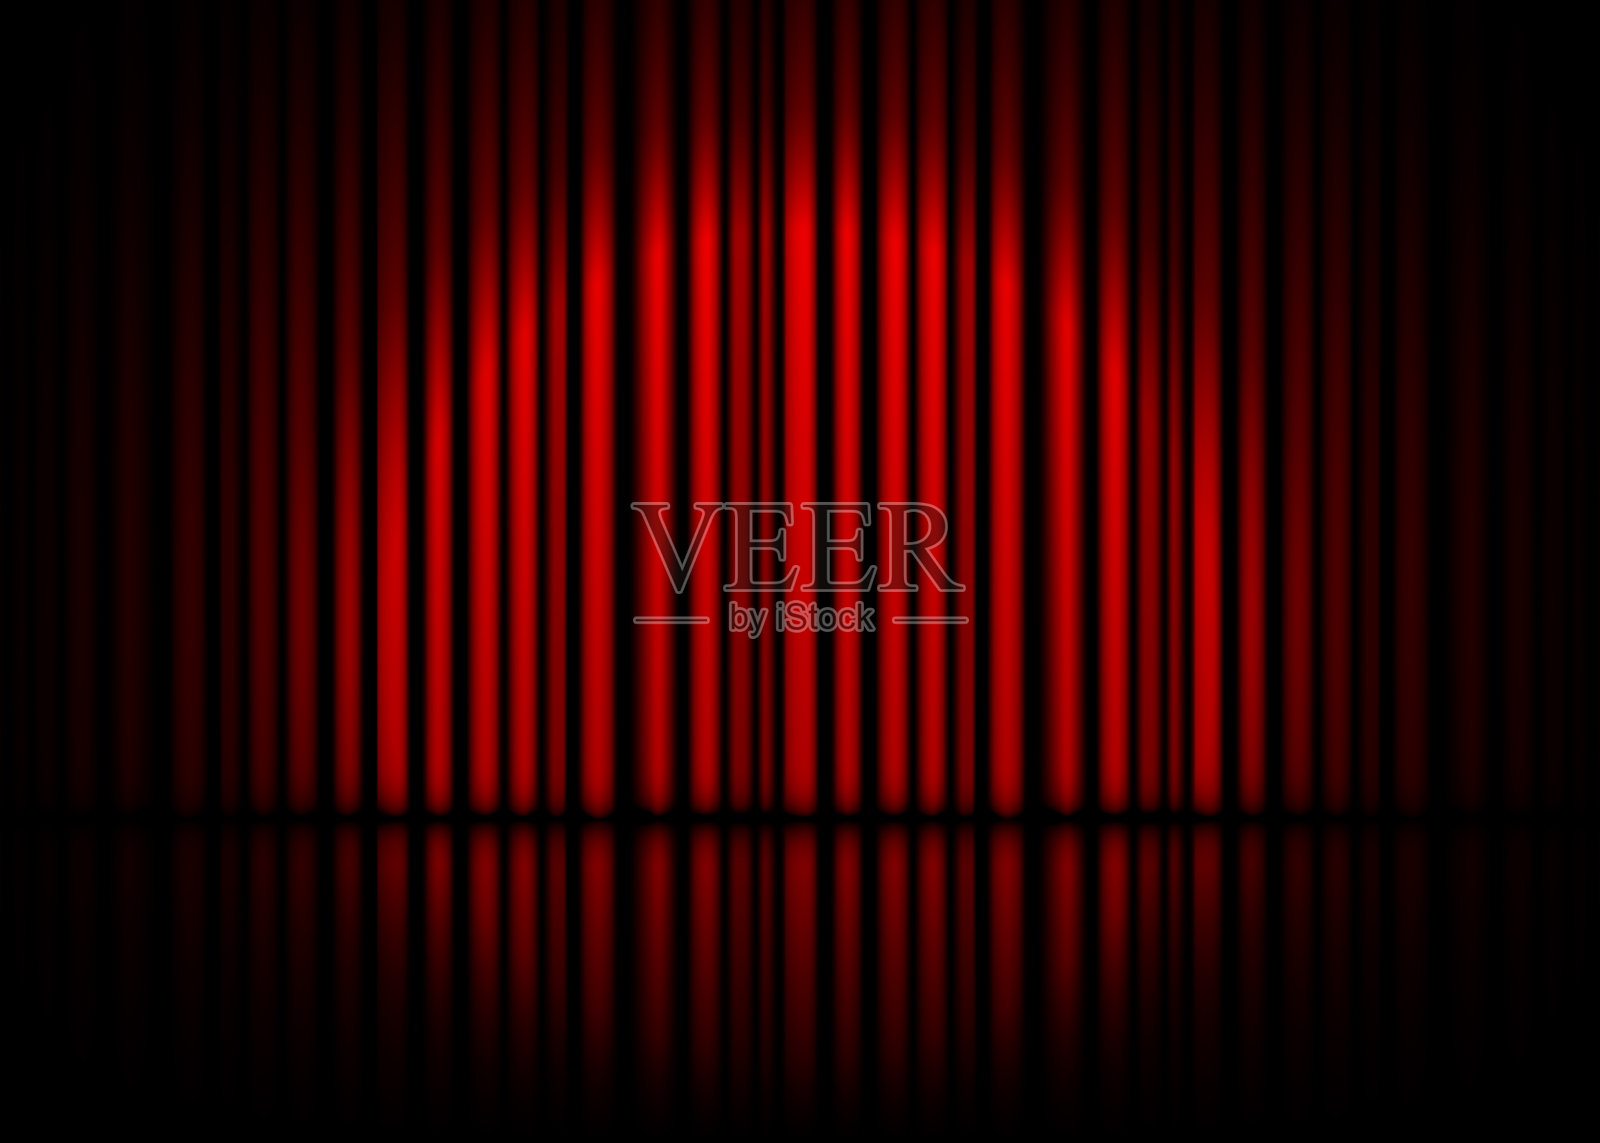 有红色窗帘和倒影的戏剧场景。股票矢量图插画图片素材